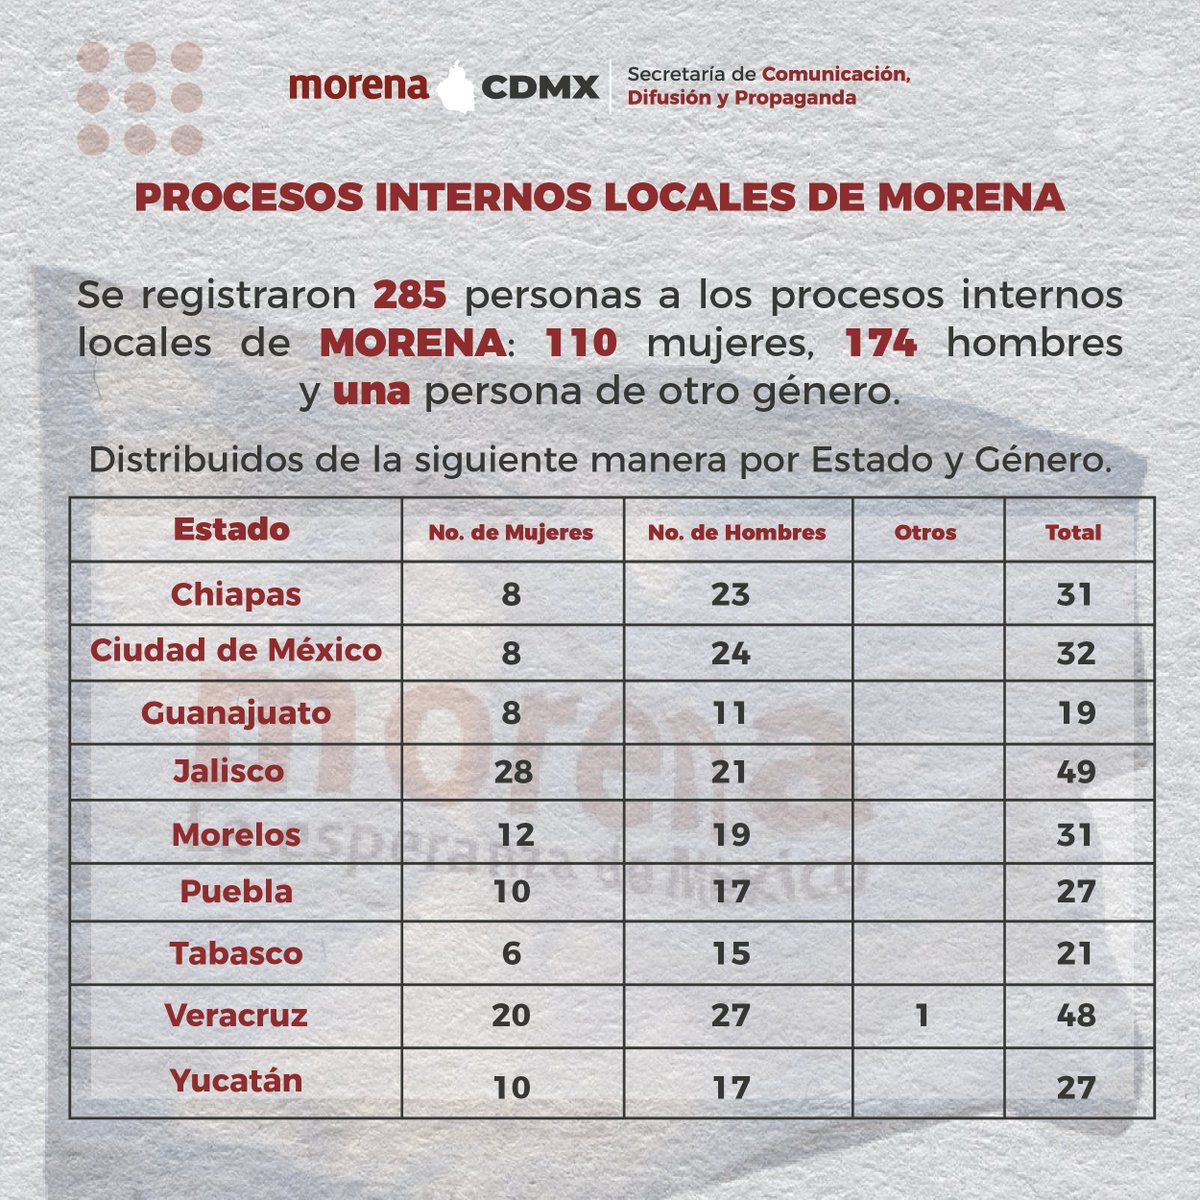 Se registraron 285 personas a los Procesos Internos Locales de MORENA: @mario_delgado 

#EnUnidad